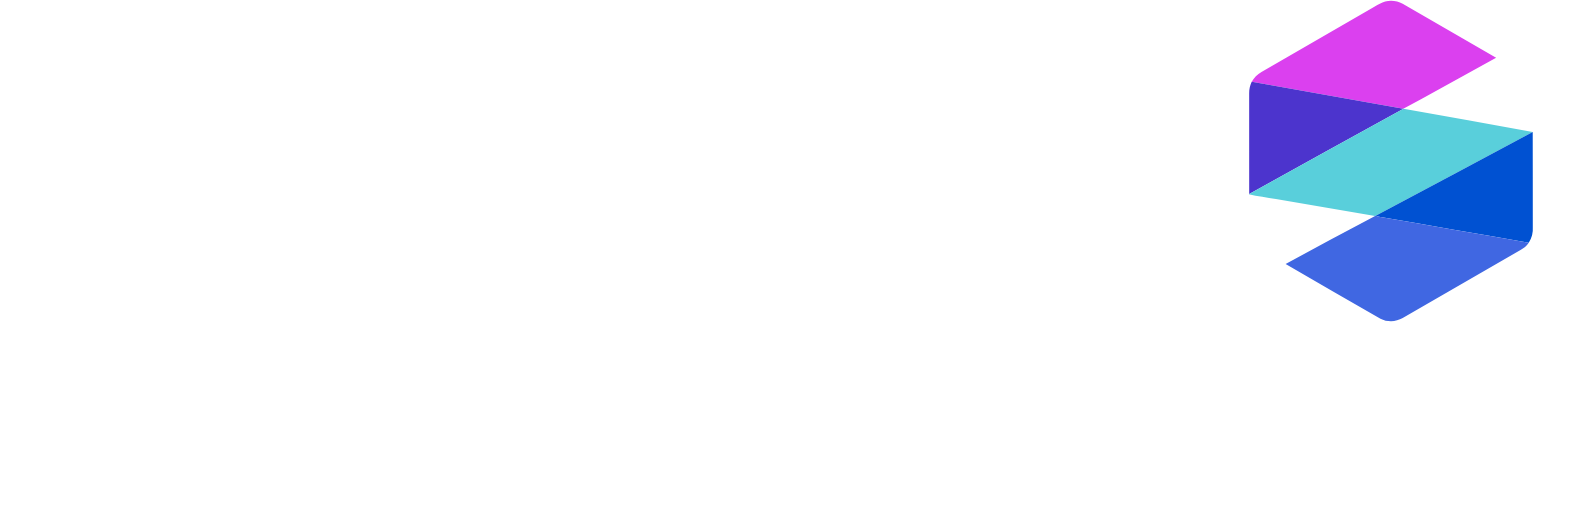 SomaLogic logo grand pour les fonds sombres (PNG transparent)